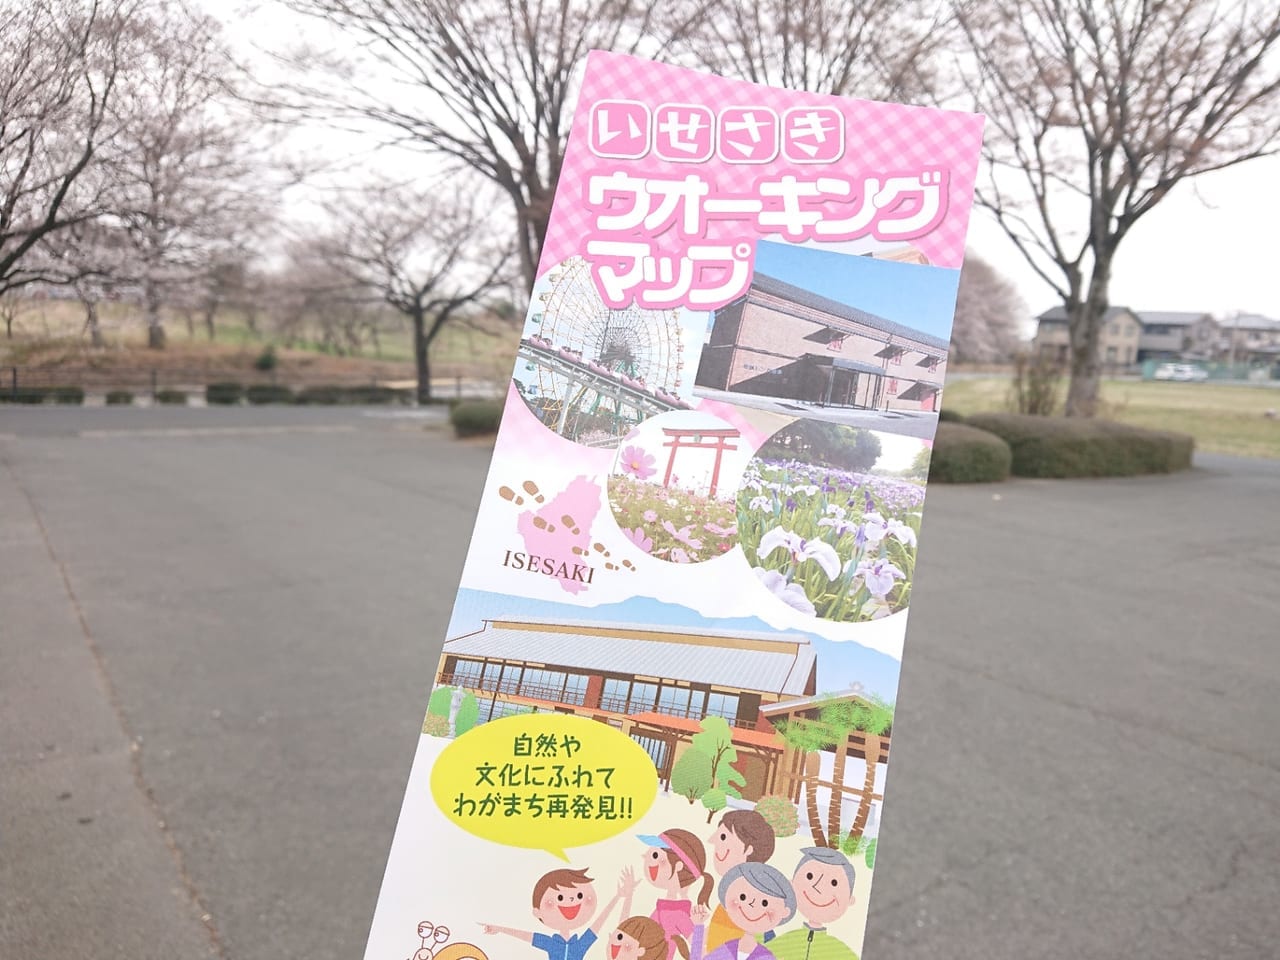 【伊勢崎市】市内各地の桜が見頃を迎えています♪リニューアルした「伊勢崎ウォーキングマップ」のコースを歩いてみた！